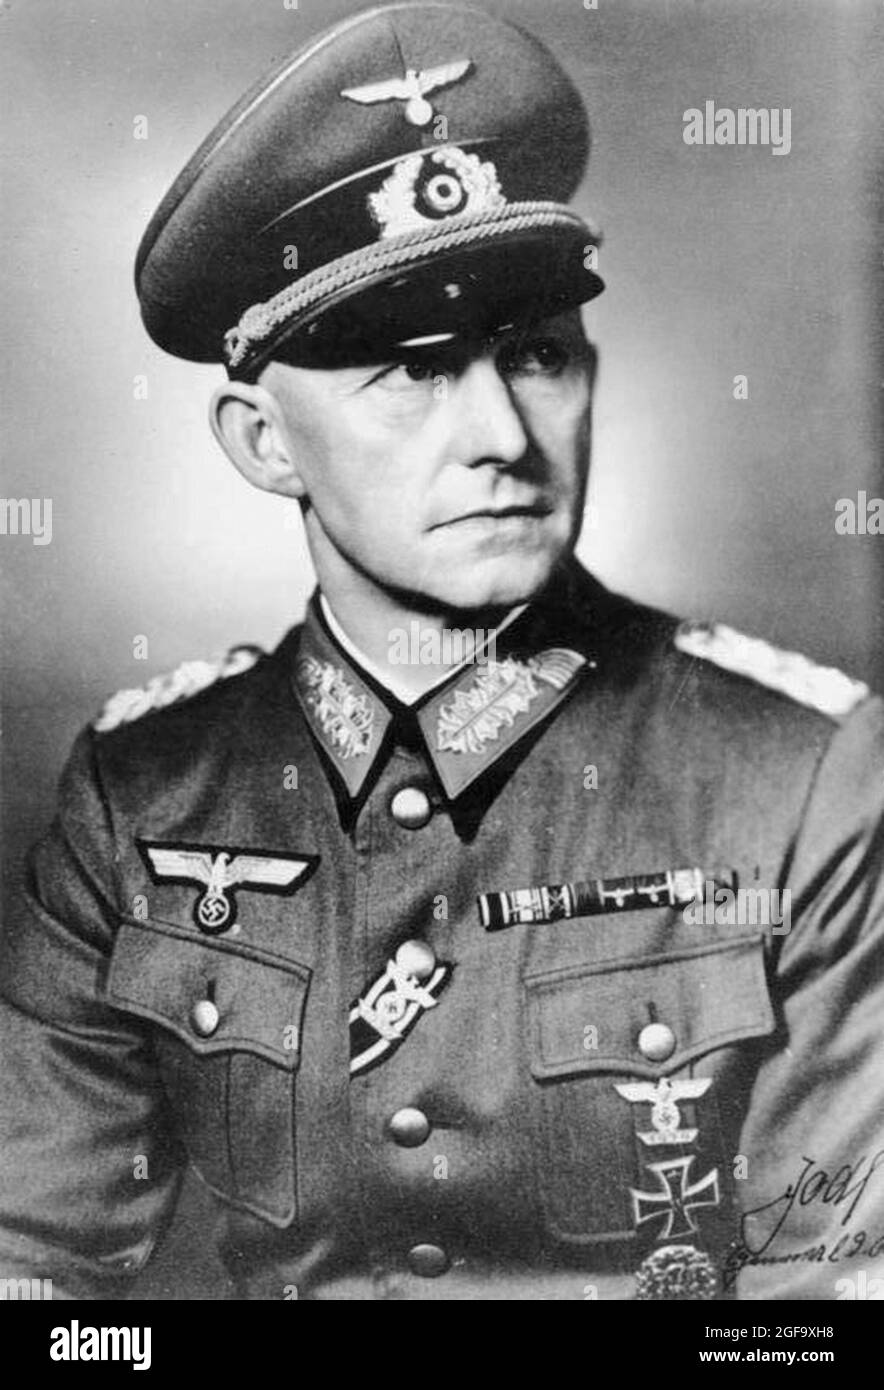 Un ritratto del capo dell'esercito tedesco Alfred Jodl. Fu catturato nel 1945, processato e impiccato a Norimberga nel 1946. Credit: Bundesarchiv tedesco Foto Stock